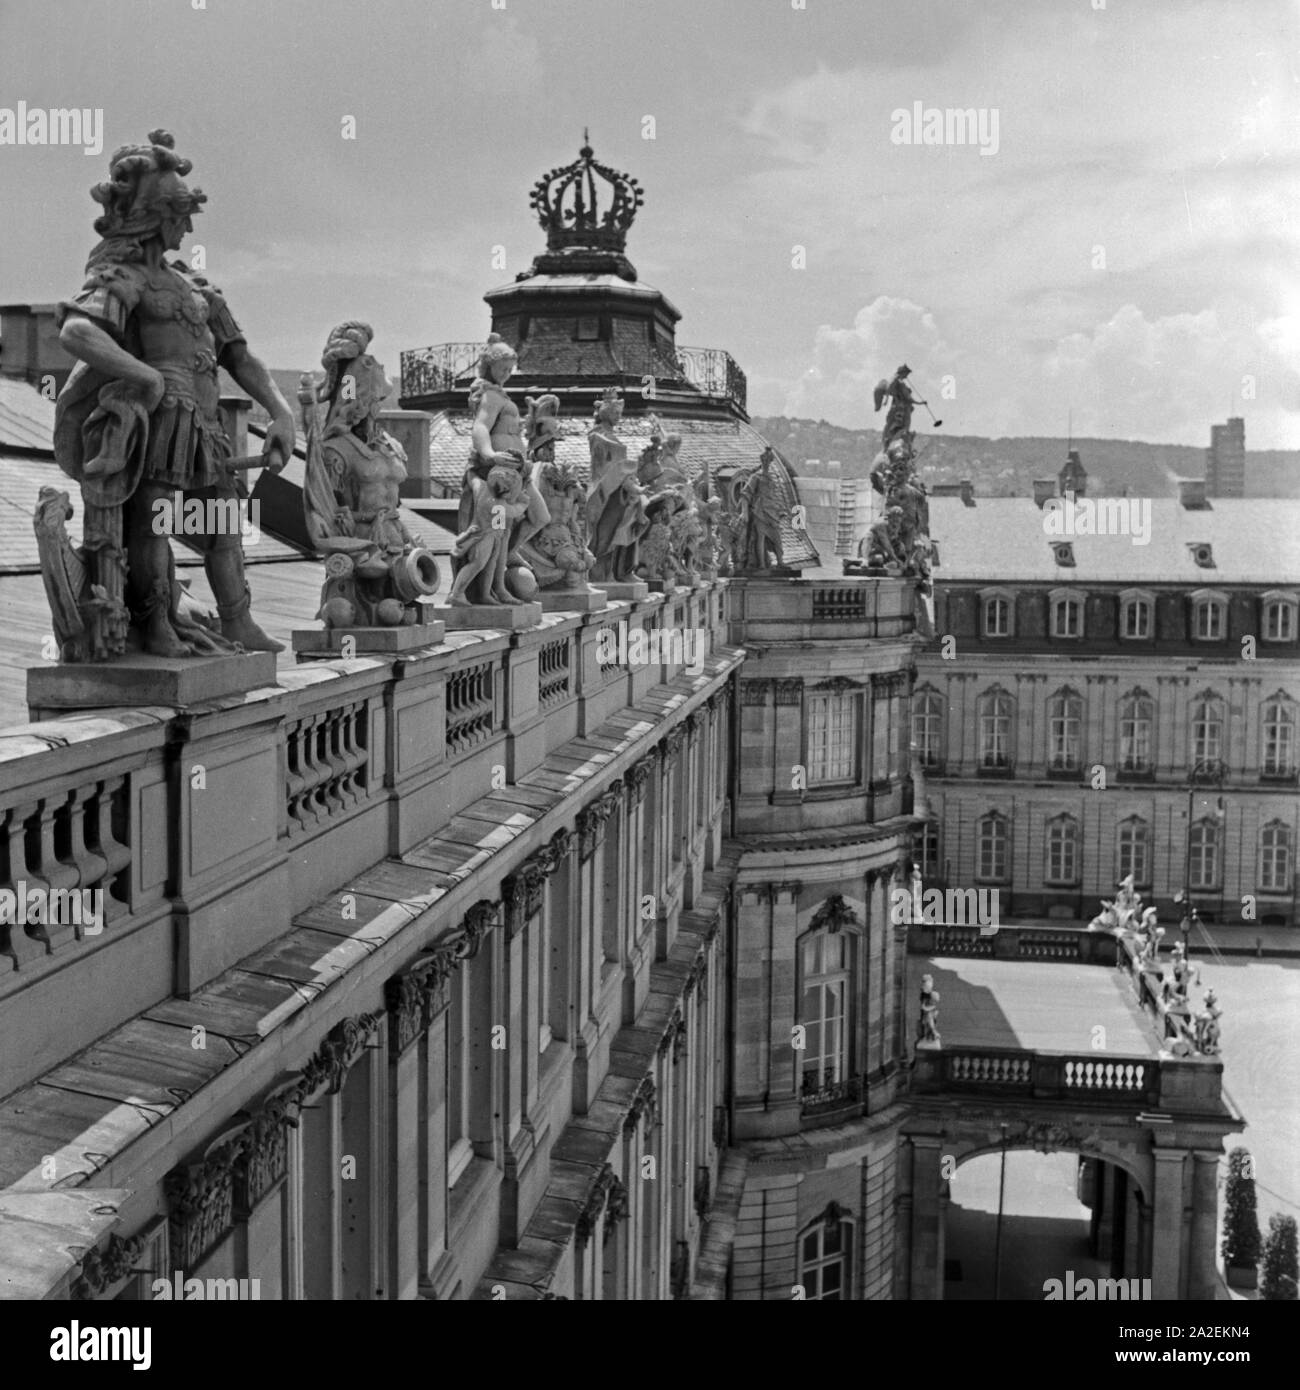 Die Statuen auf dem Dach des Neuen Schlosses in Stoccarda, Deutschland 1930er Jahre. Sculture sul tetto del nuovo castello a Stoccarda, Germania 1930s. Foto Stock